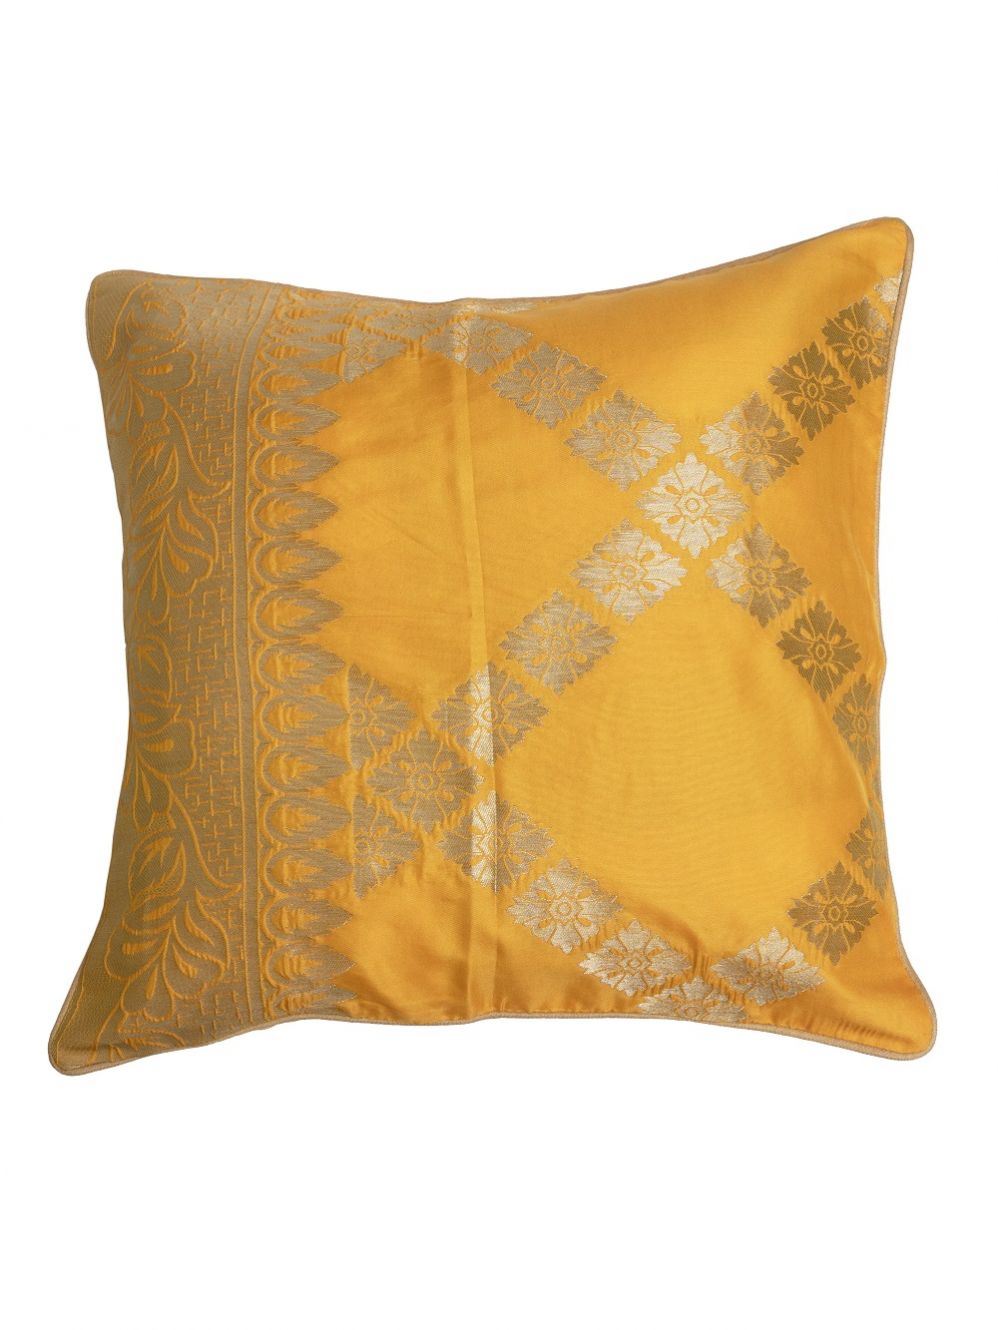 Yellow  Banarasi Brocade Cushion Cover - Size 16 x 16 Inch